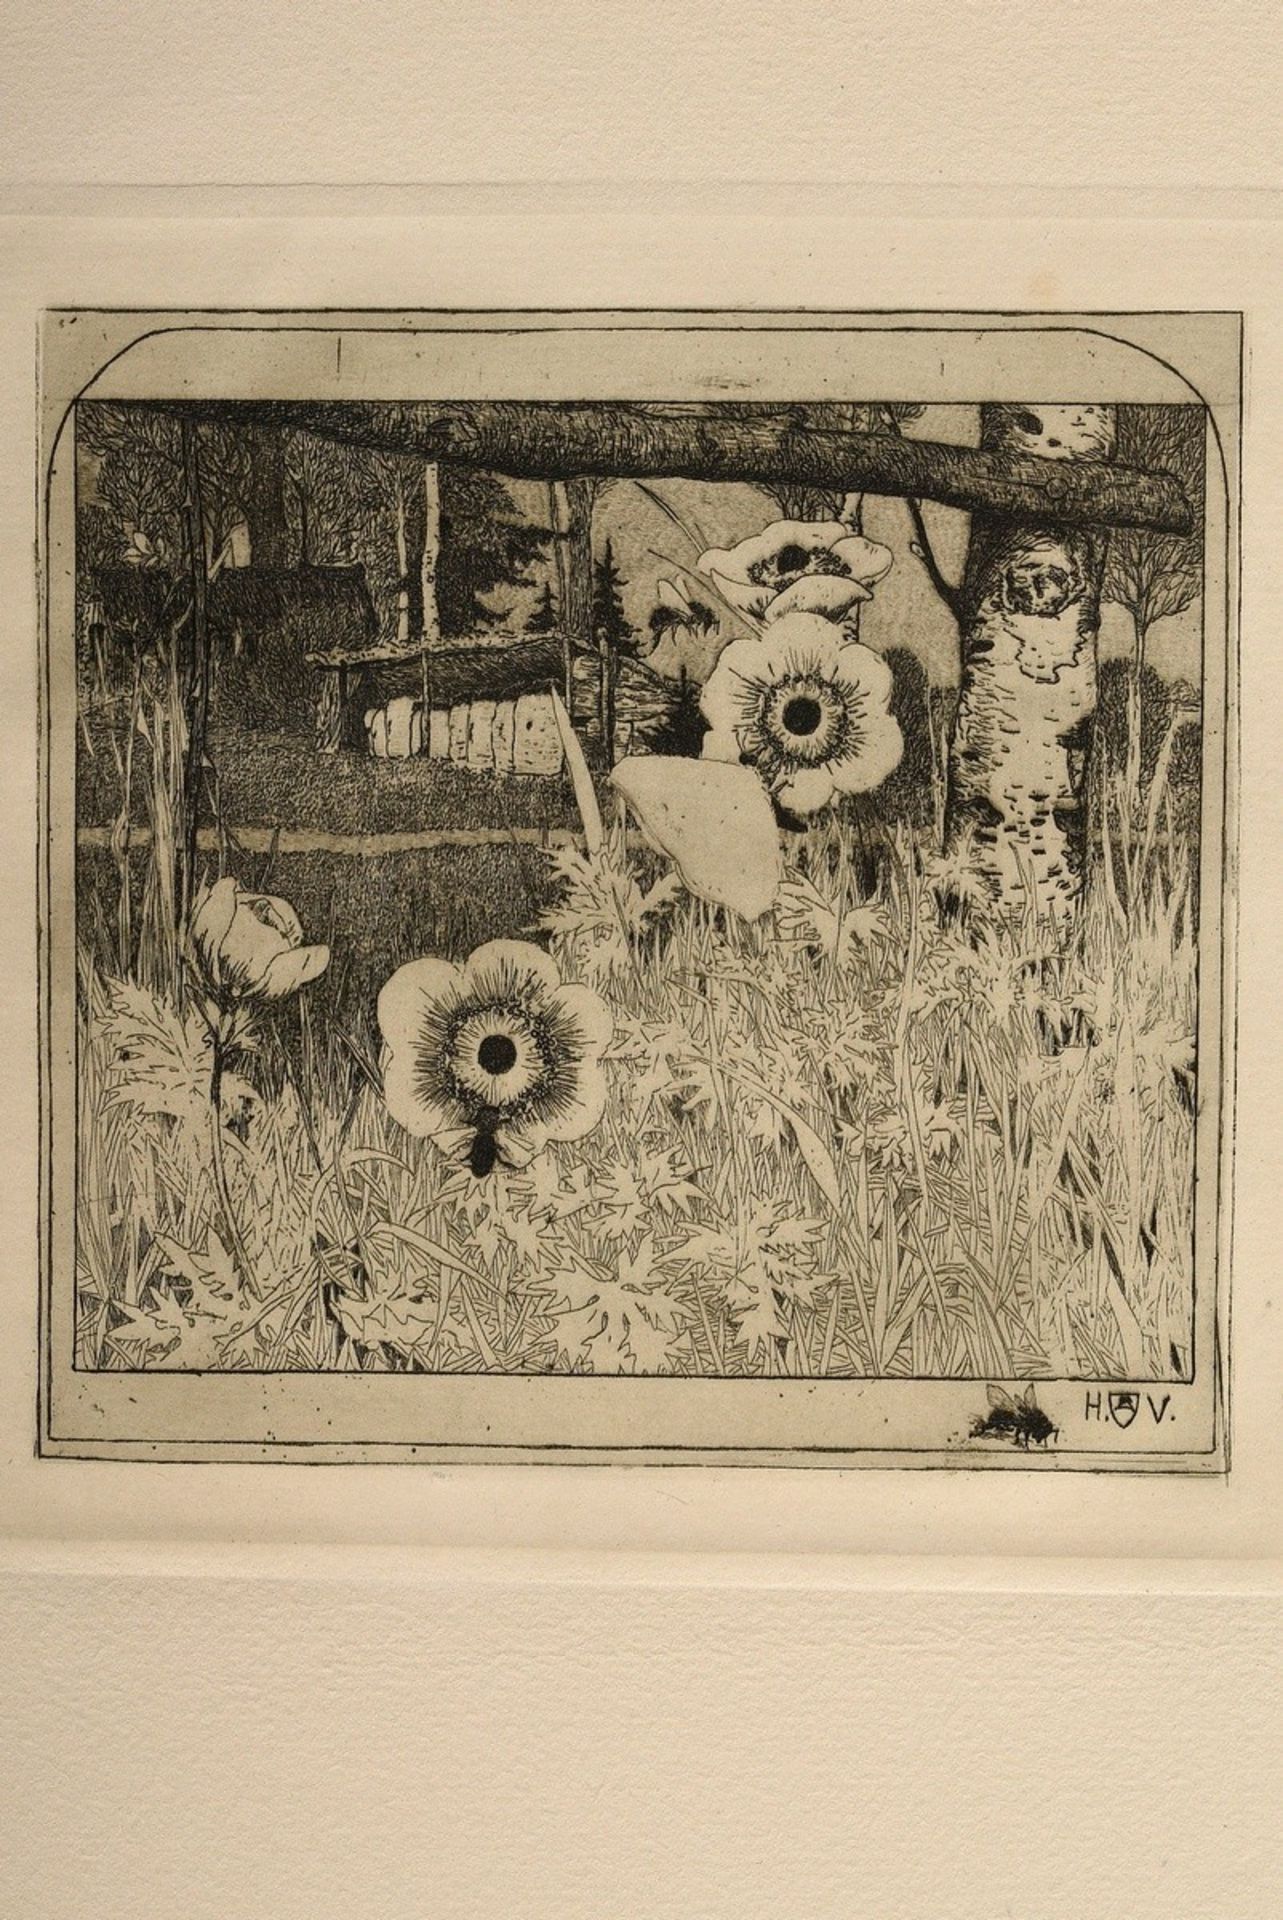 Vogeler, Heinrich (1872-1942) "An den Frühling" 1899/1901, Mappe mit 10 Radierungen und Vorblatt, P - Bild 5 aus 25